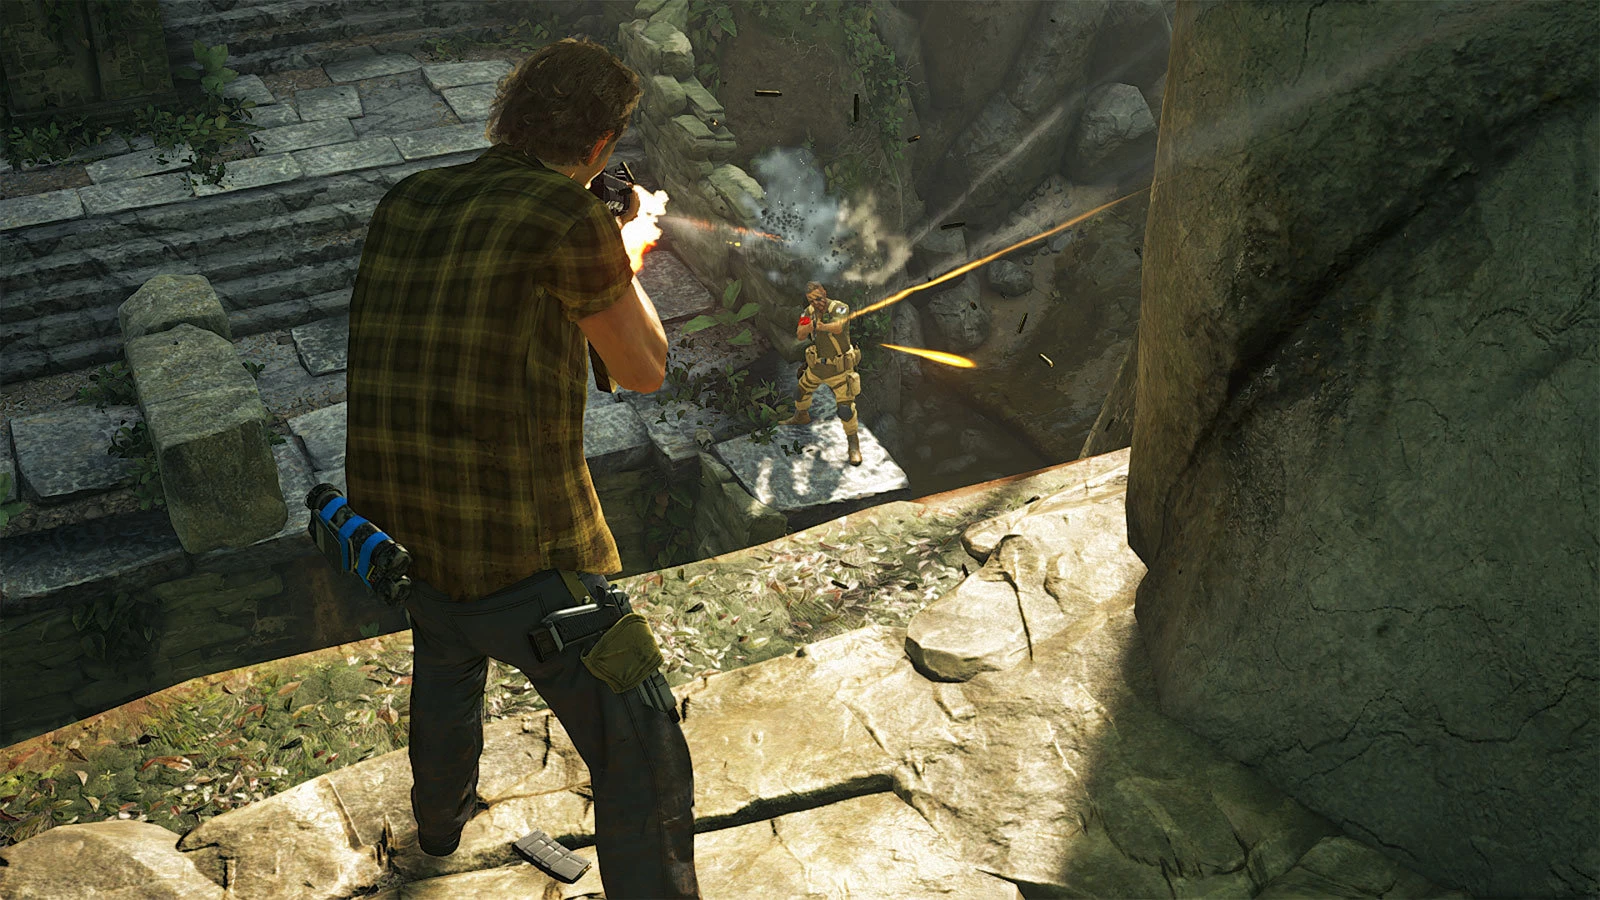 Uncharted 4: A Thief's End voor de PlayStation 4 kopen op nedgame.nl